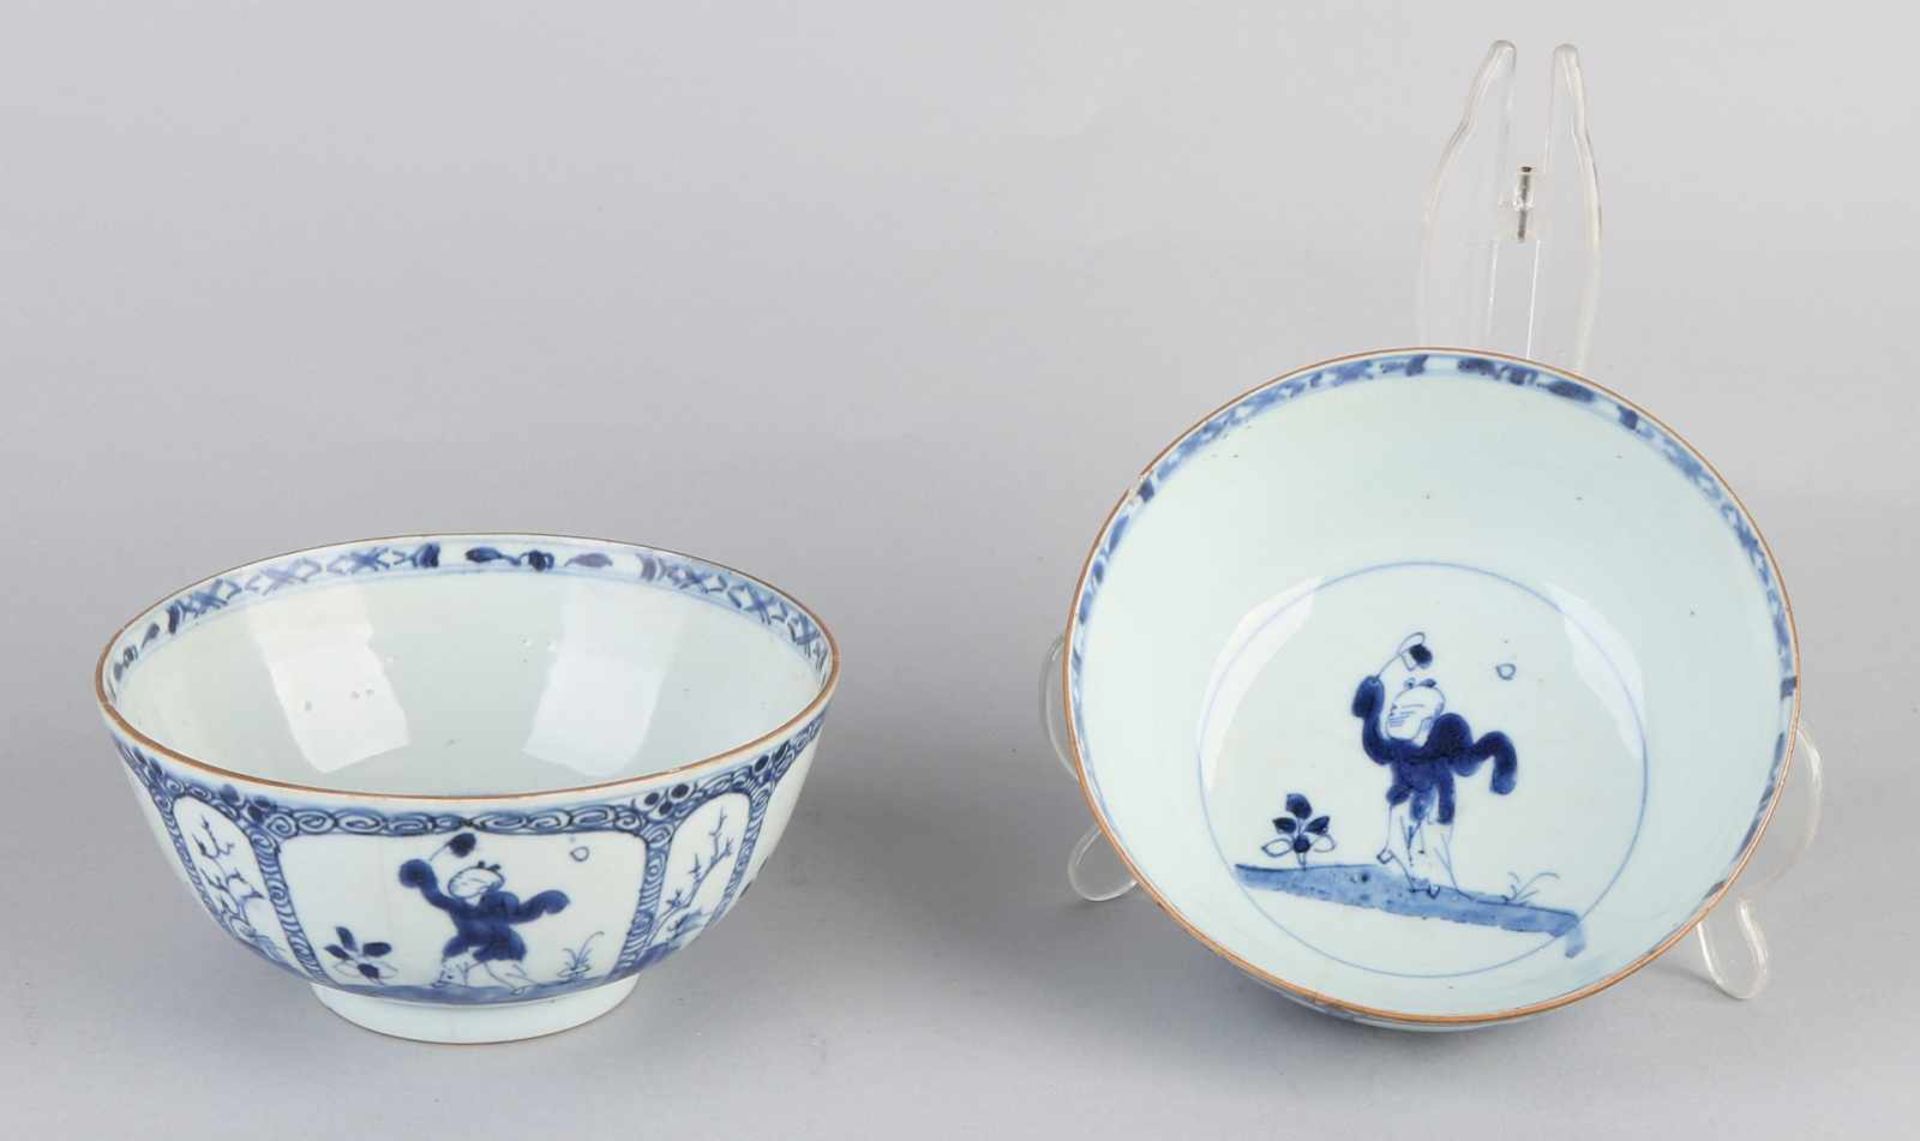 Zwei chinesische Porzellanschalen aus dem 18. Jahrhundert mit törichtem Dekor. Haarlinien. Größe: